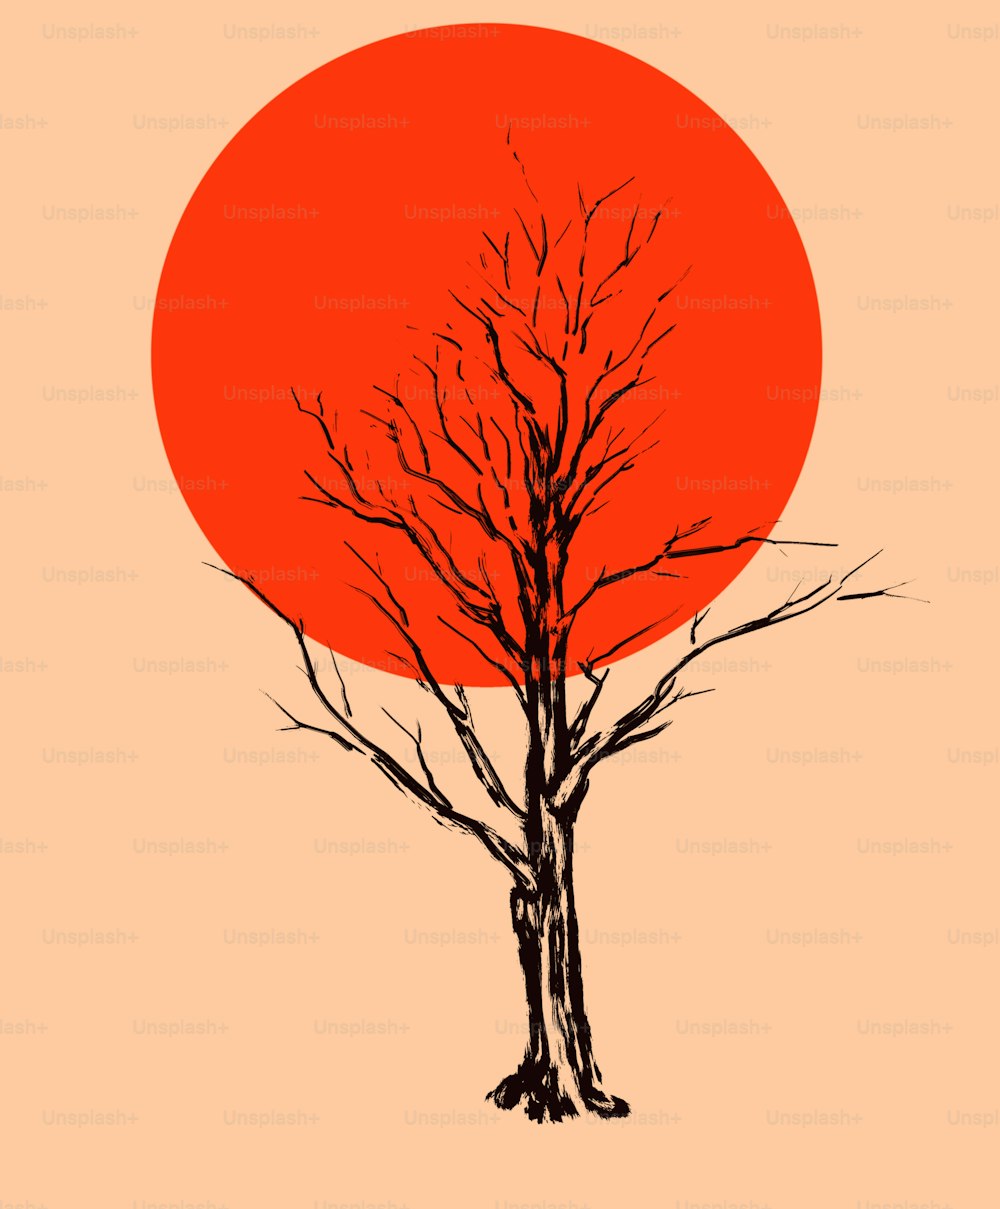 赤熱した太陽の円盤を背景にした枯れ木。縦書き形式